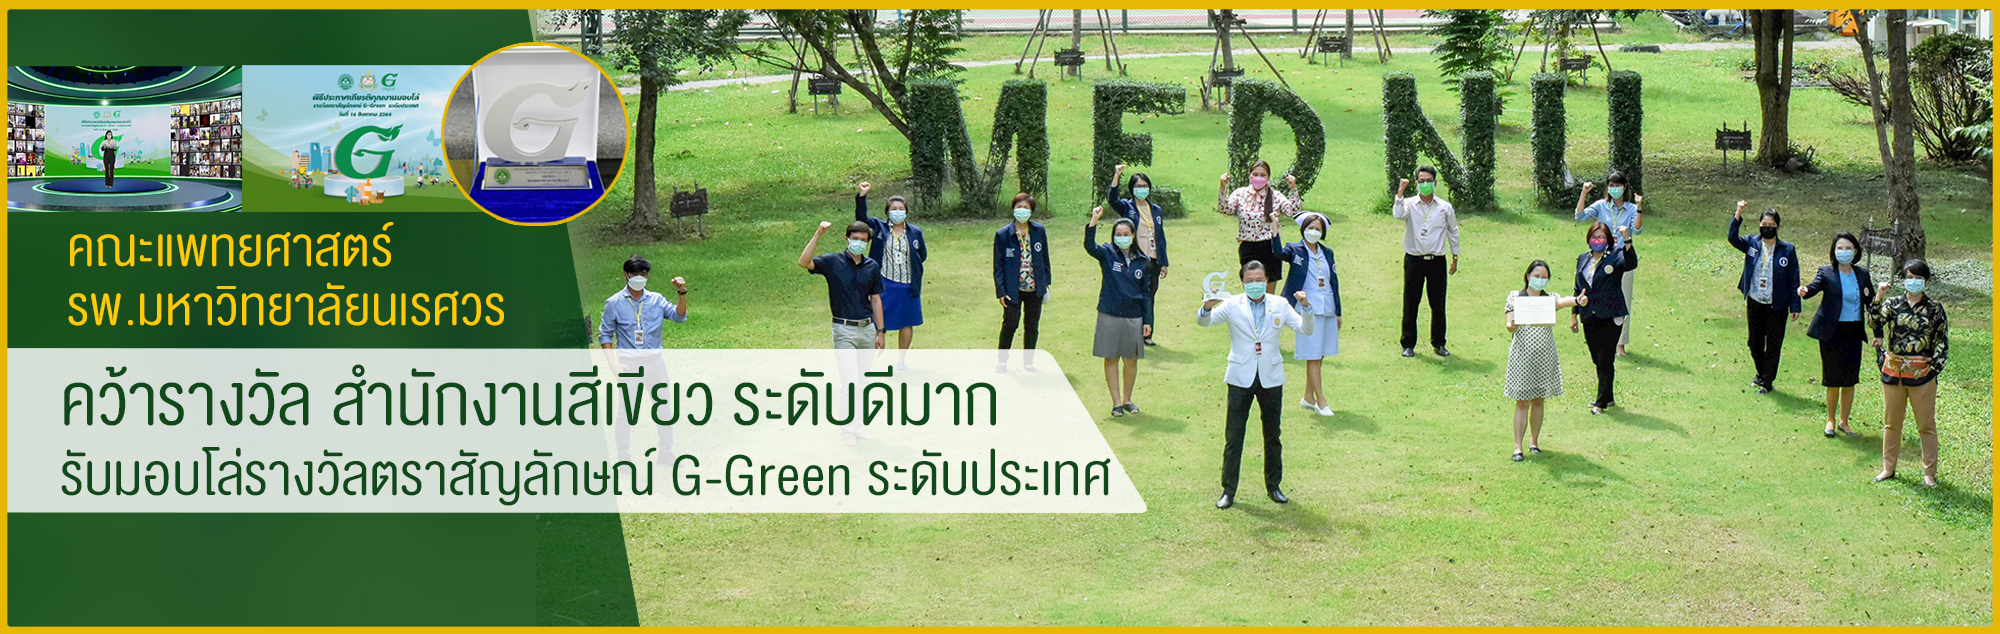 คณะแพทยศาสตร์ คว้ารางวัล สำนักงานสีเขียว ระดับดีมาก รับมอบโล่รางวัลตราสัญลักษณ์ G-Green ระดับประเทศ